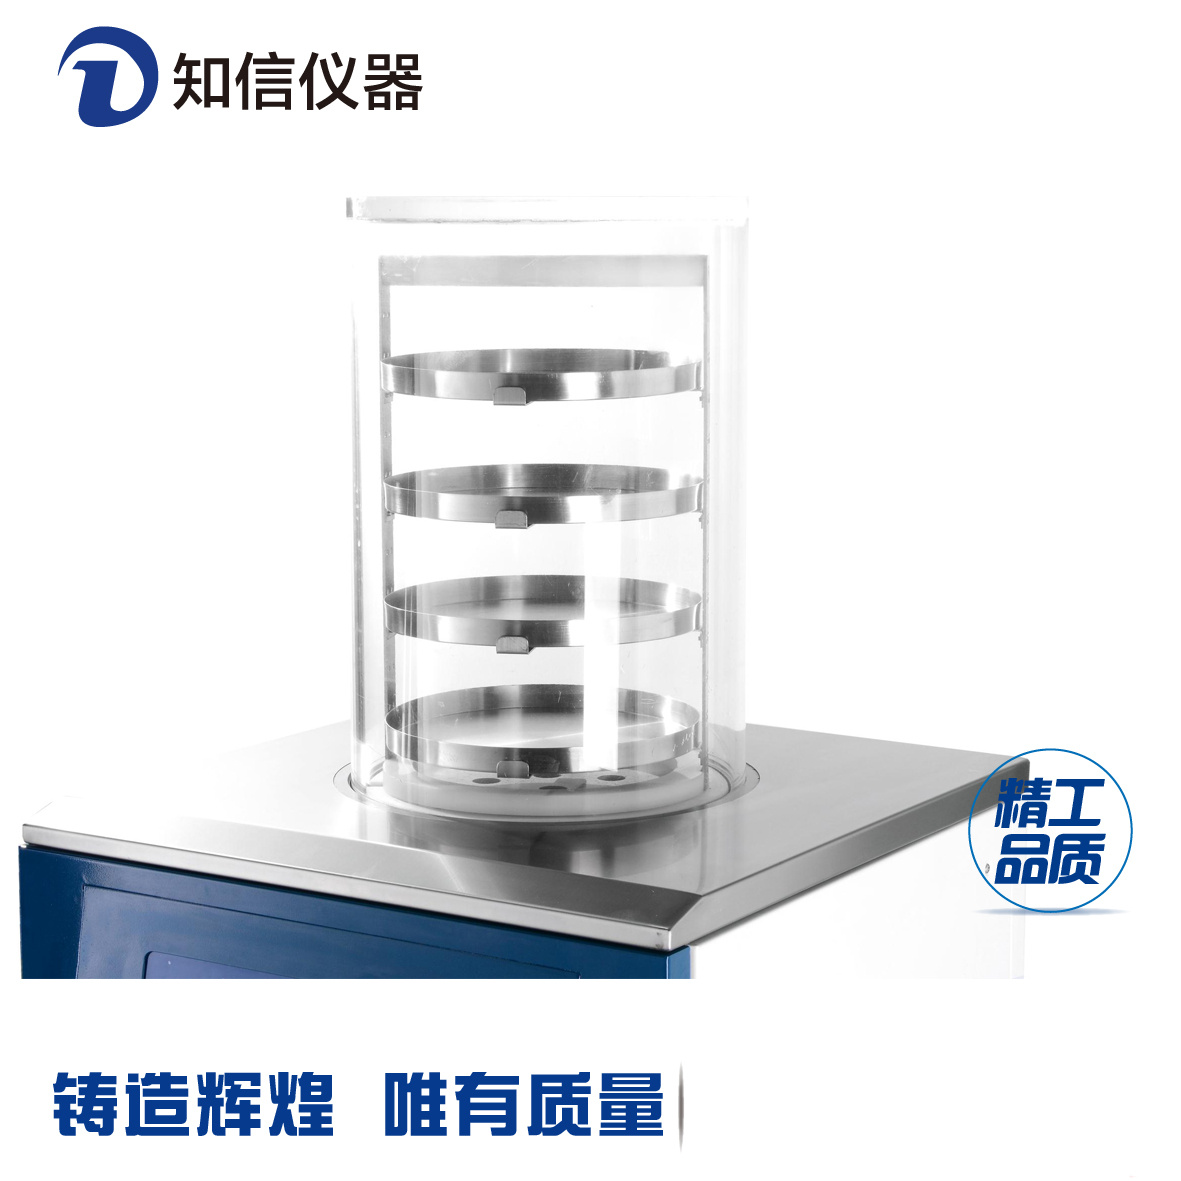 上海知信立式冷冻干燥机ZXLGJ18真空冻干机